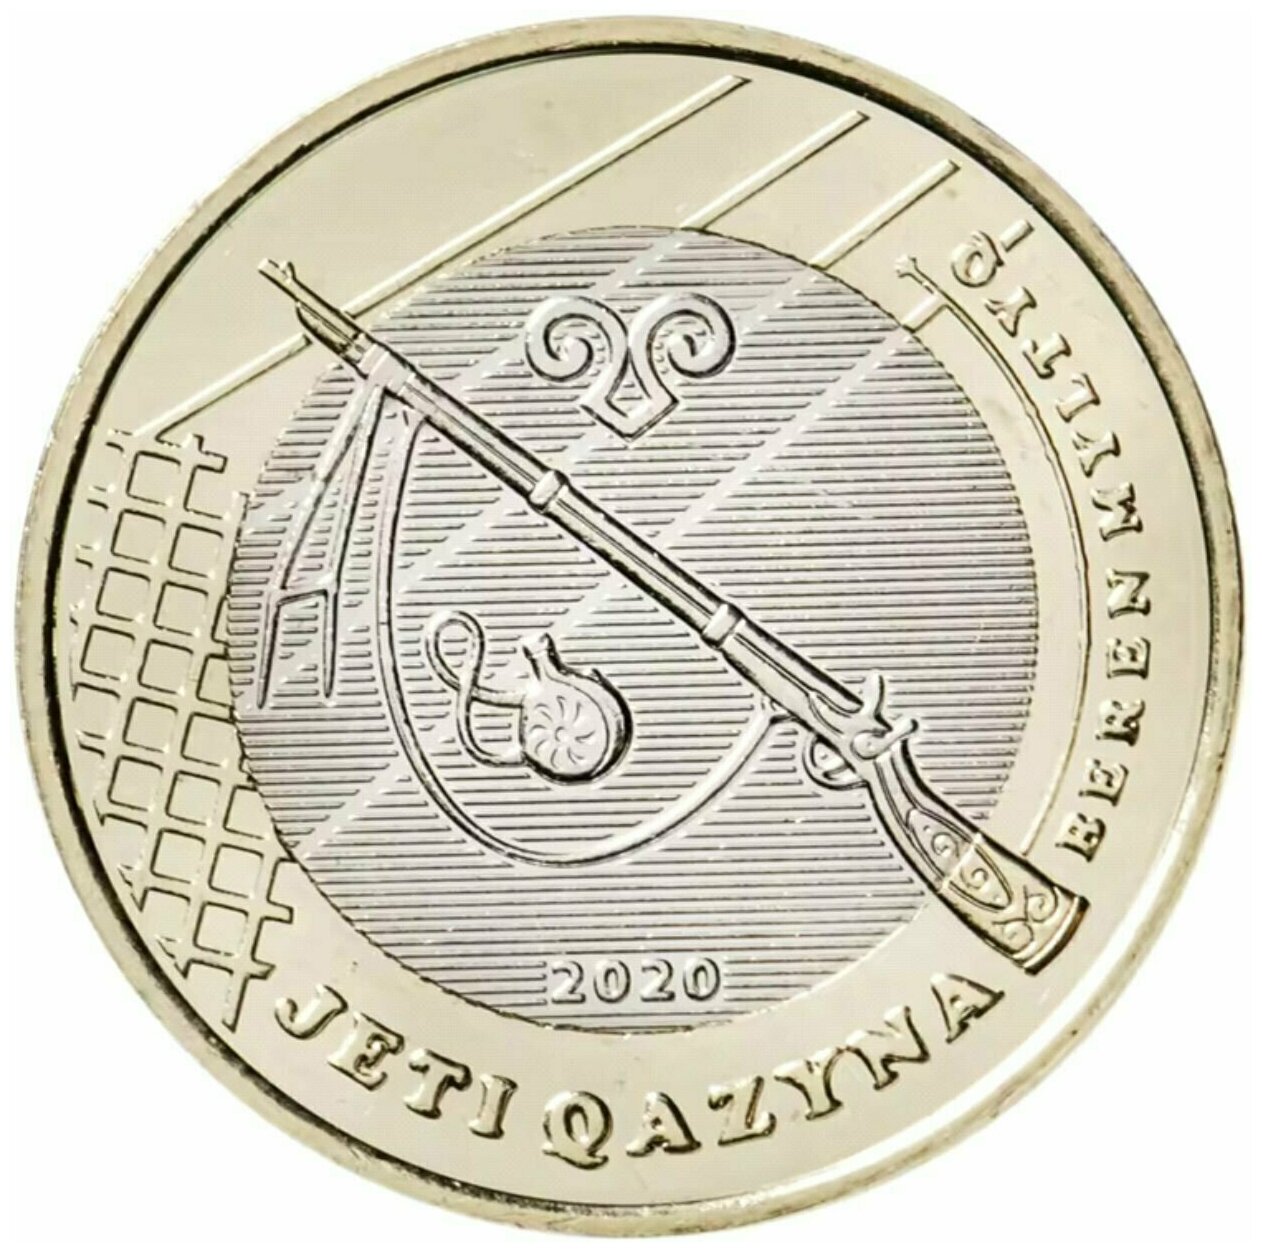 Памятная монета 100 тенге Хорошее ружье. Сокровища степи. Казахстан, 2020 г. в. Монета в состоянии UNC (из мешка)